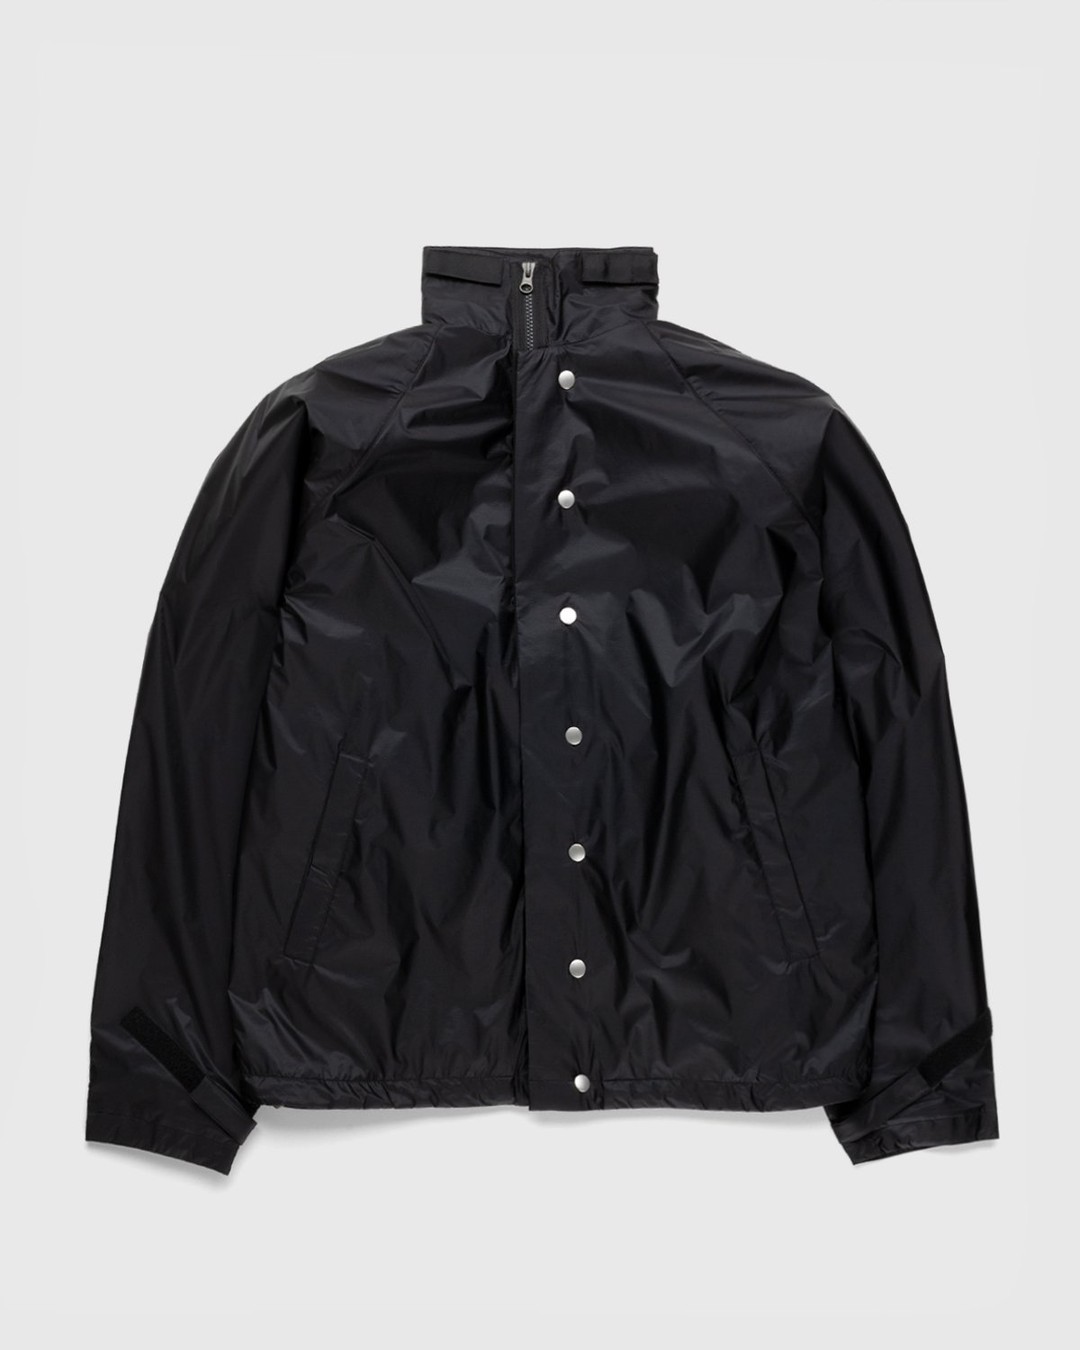 ACRONYM – J95-WS Jacket Black - Jackets - Black - Image 1